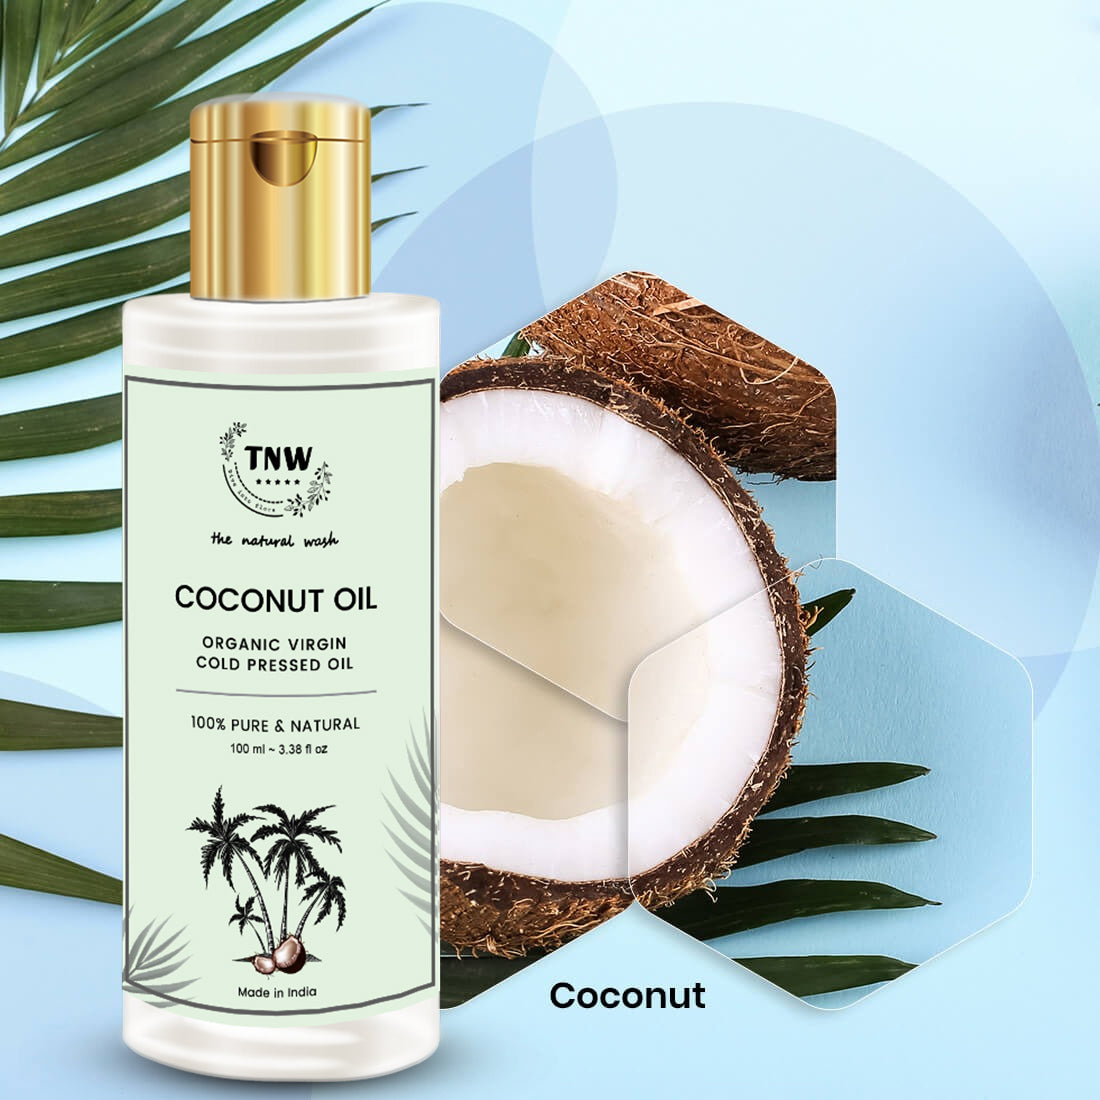 Virgin Coconut Oil Ingredients